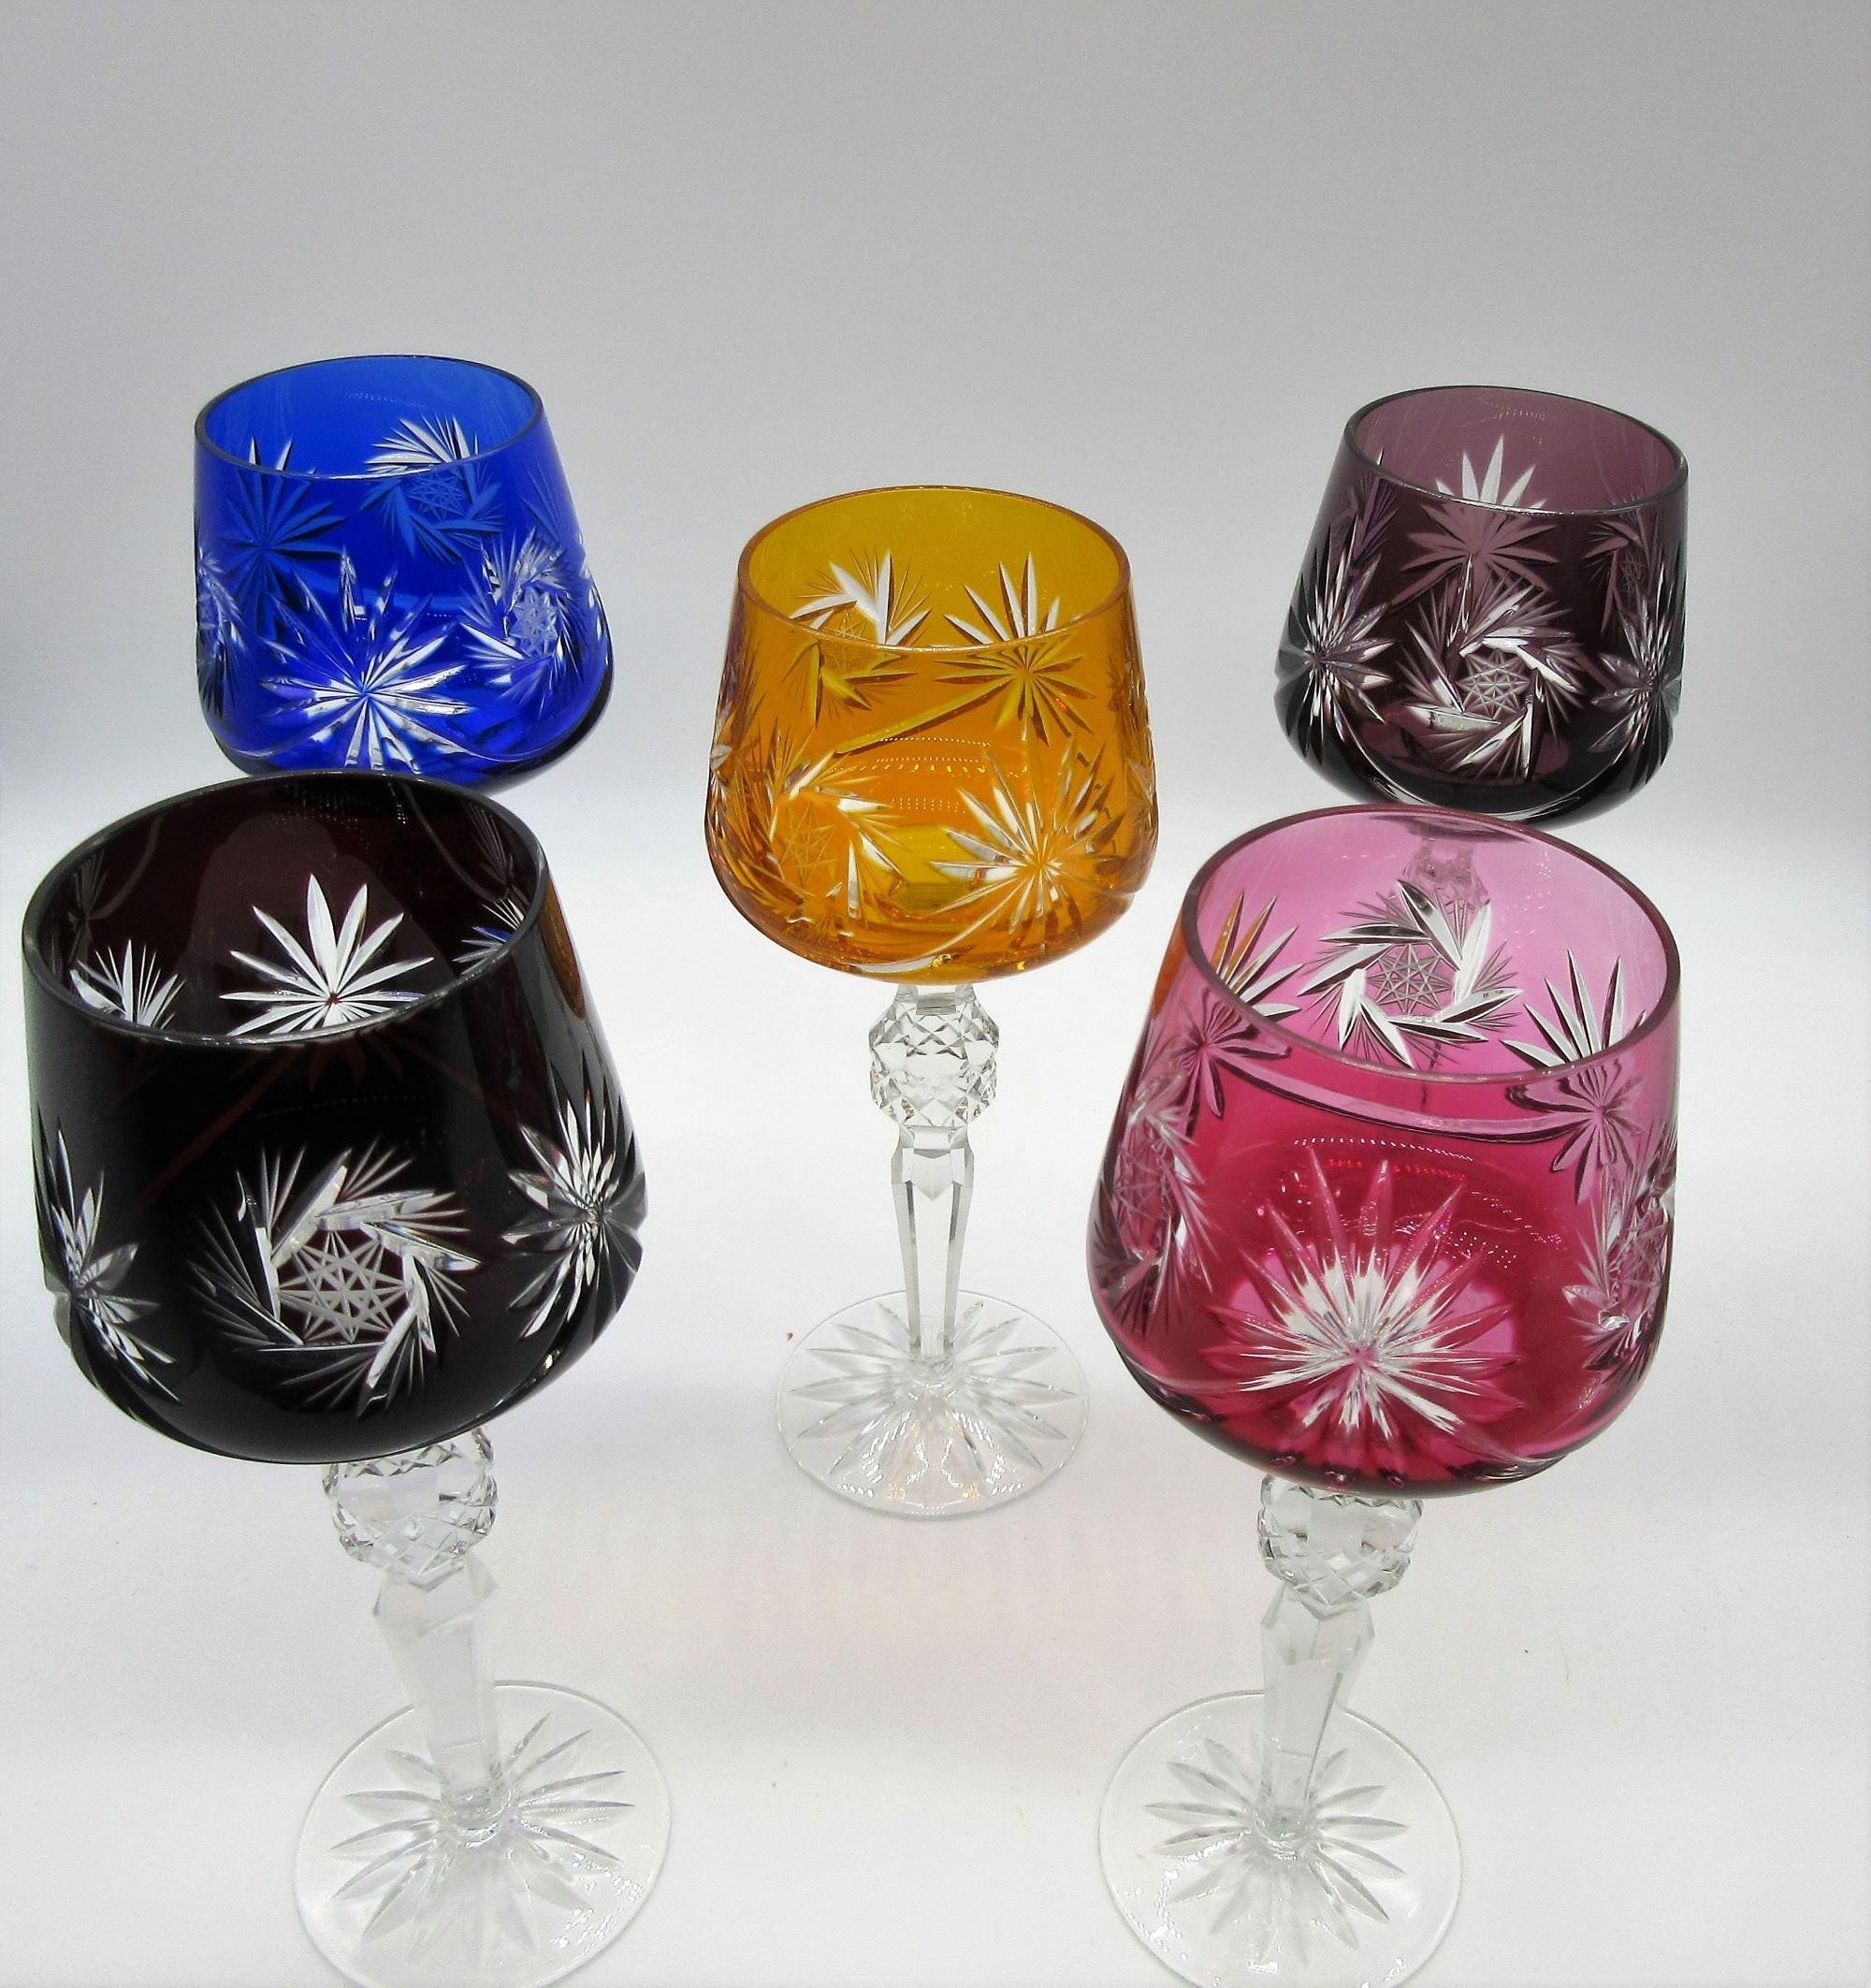 Czech Bohemian Wine Glass decorated with Swarovski Crystals 280ml Crystal  Czech Republic –